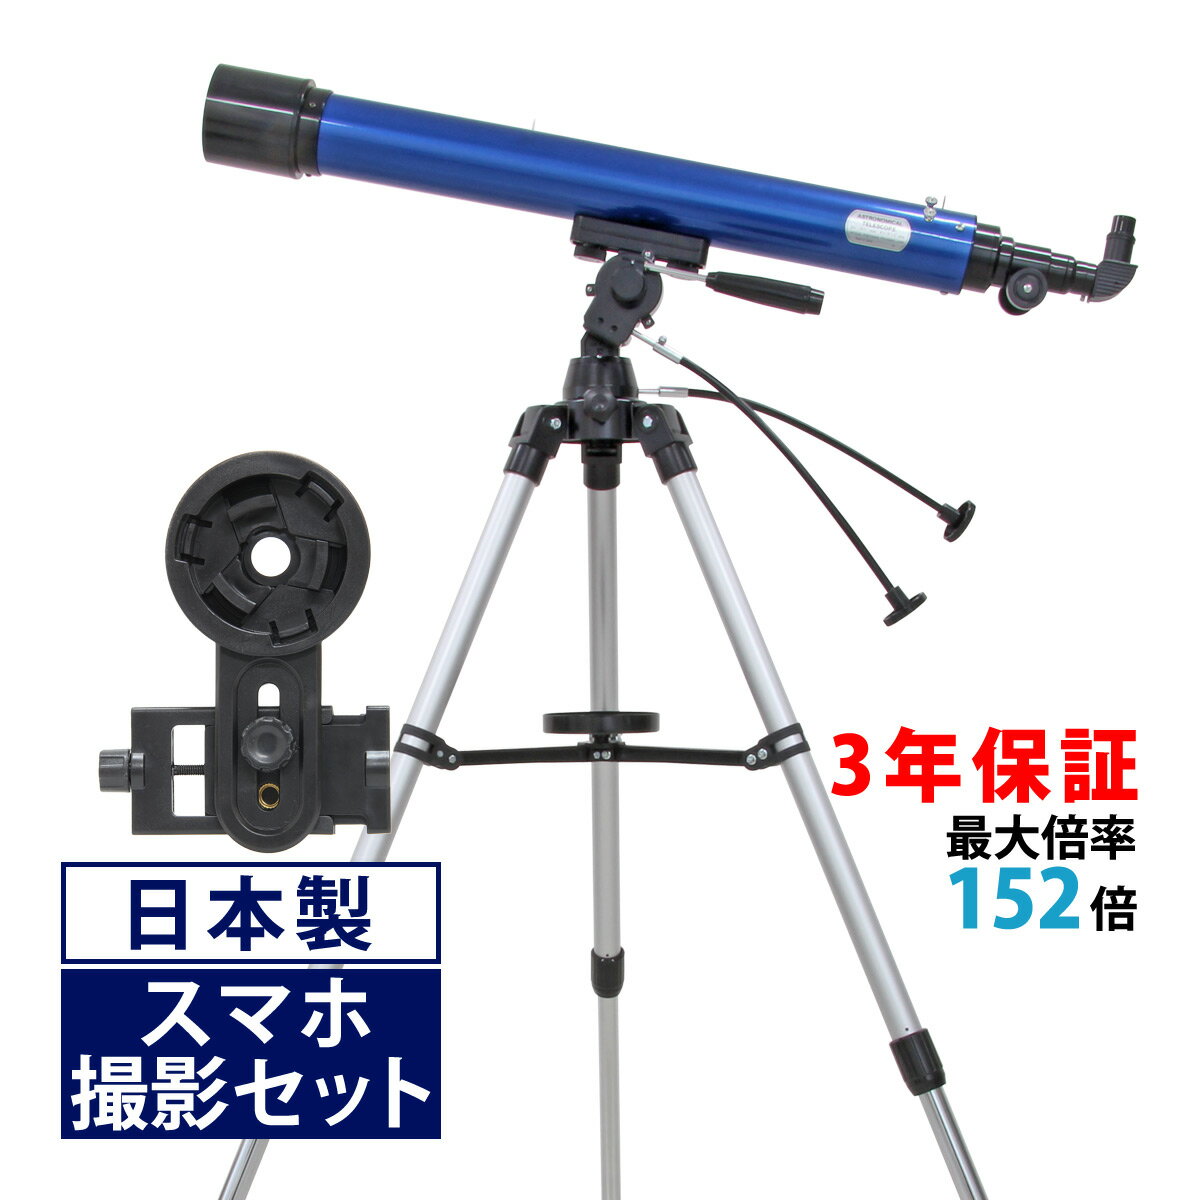 天体望遠鏡 80mm 口径 携帯 スマホ 撮影 初心者 天体望遠鏡セット 望遠鏡 天体 小学生 携帯 リゲル80 屈折式 天体ガイドブック付き 日本製 子供用